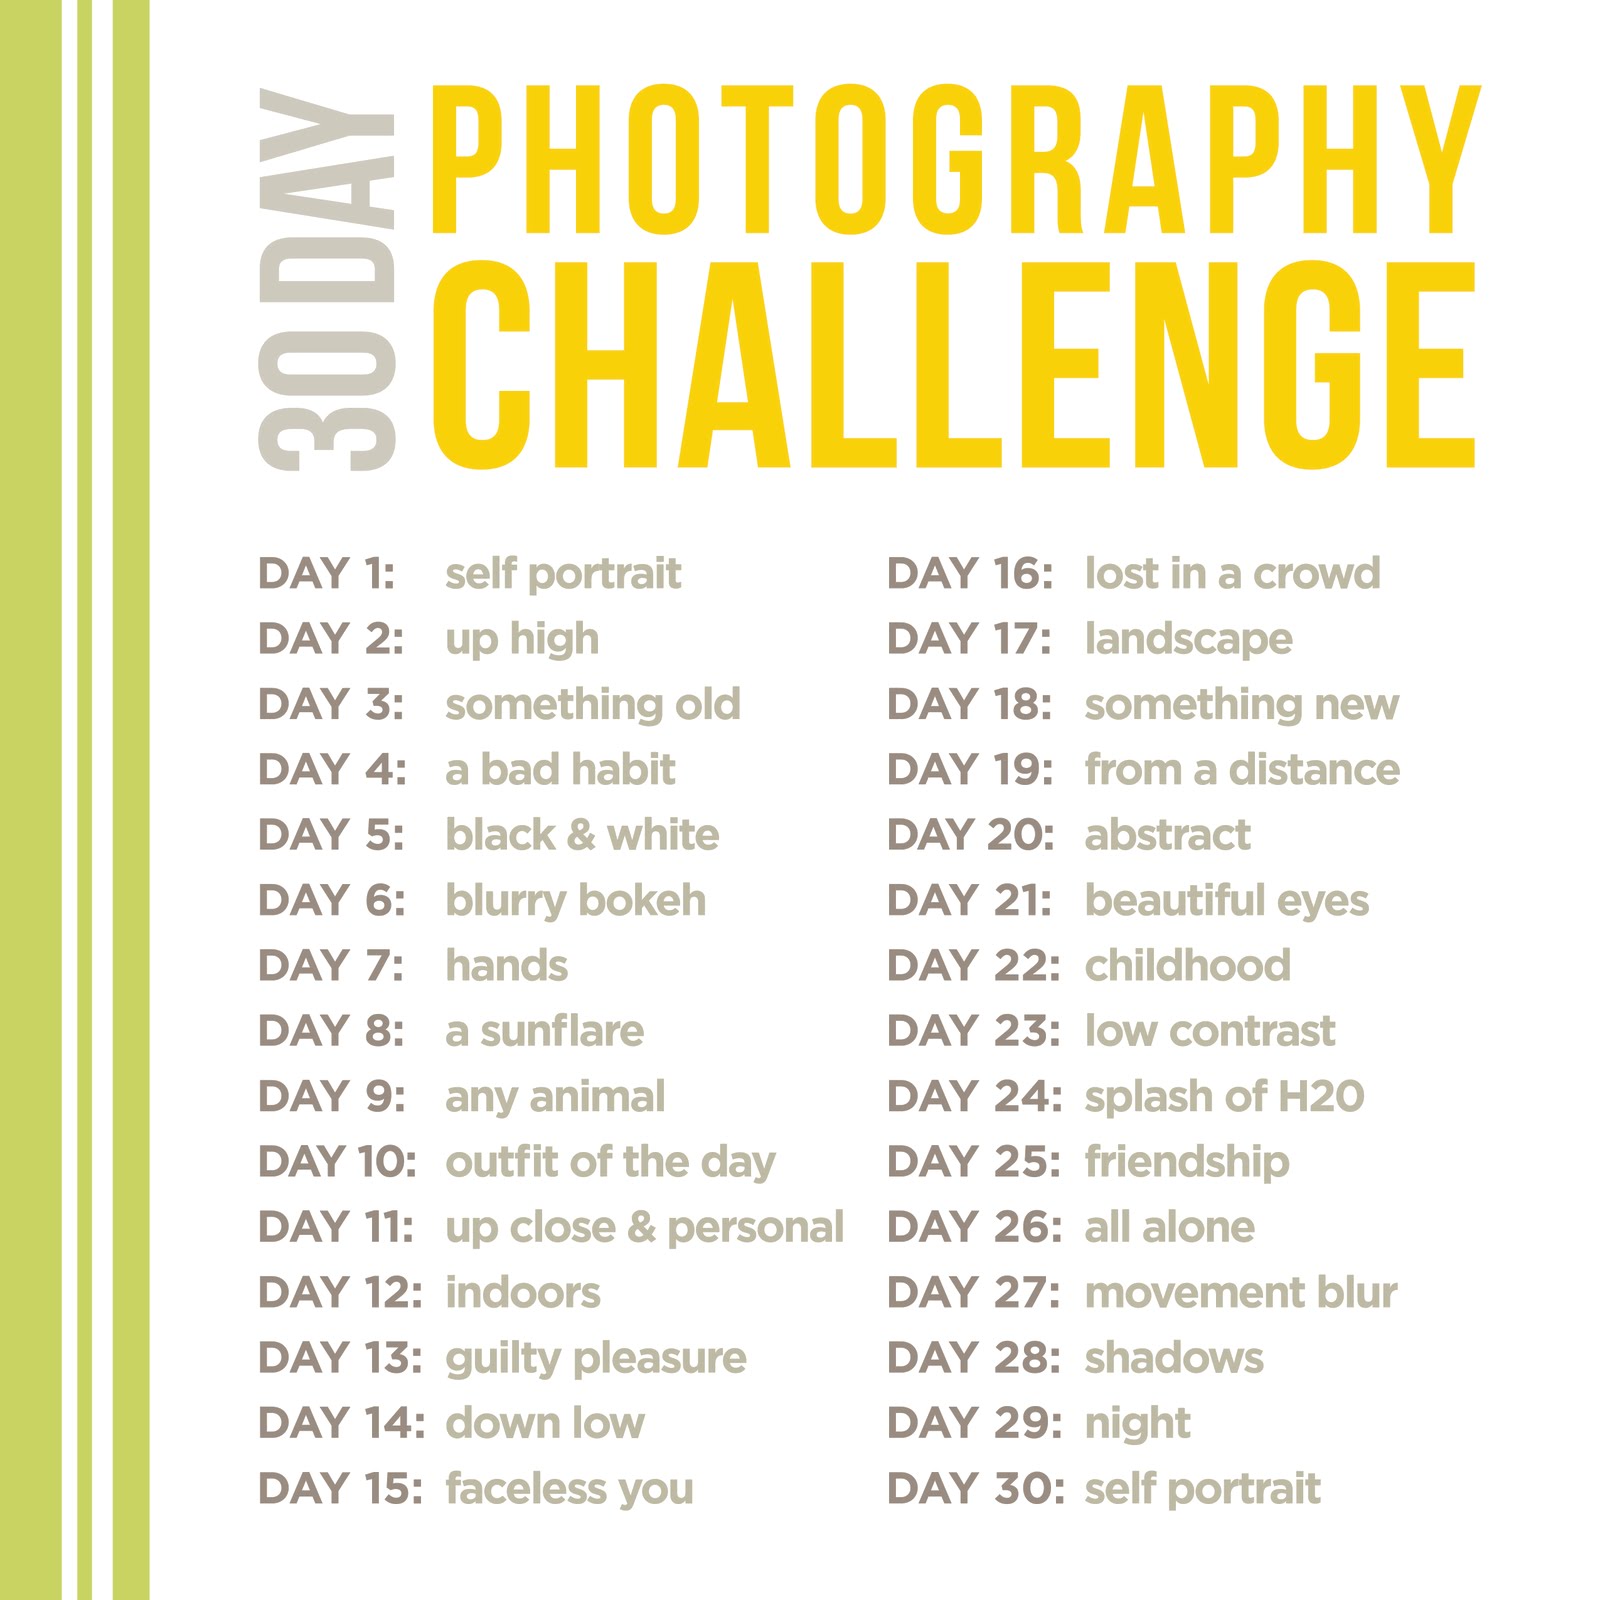 30-day-photo-challenge-list-by-gryce-allergies-on-deviantart